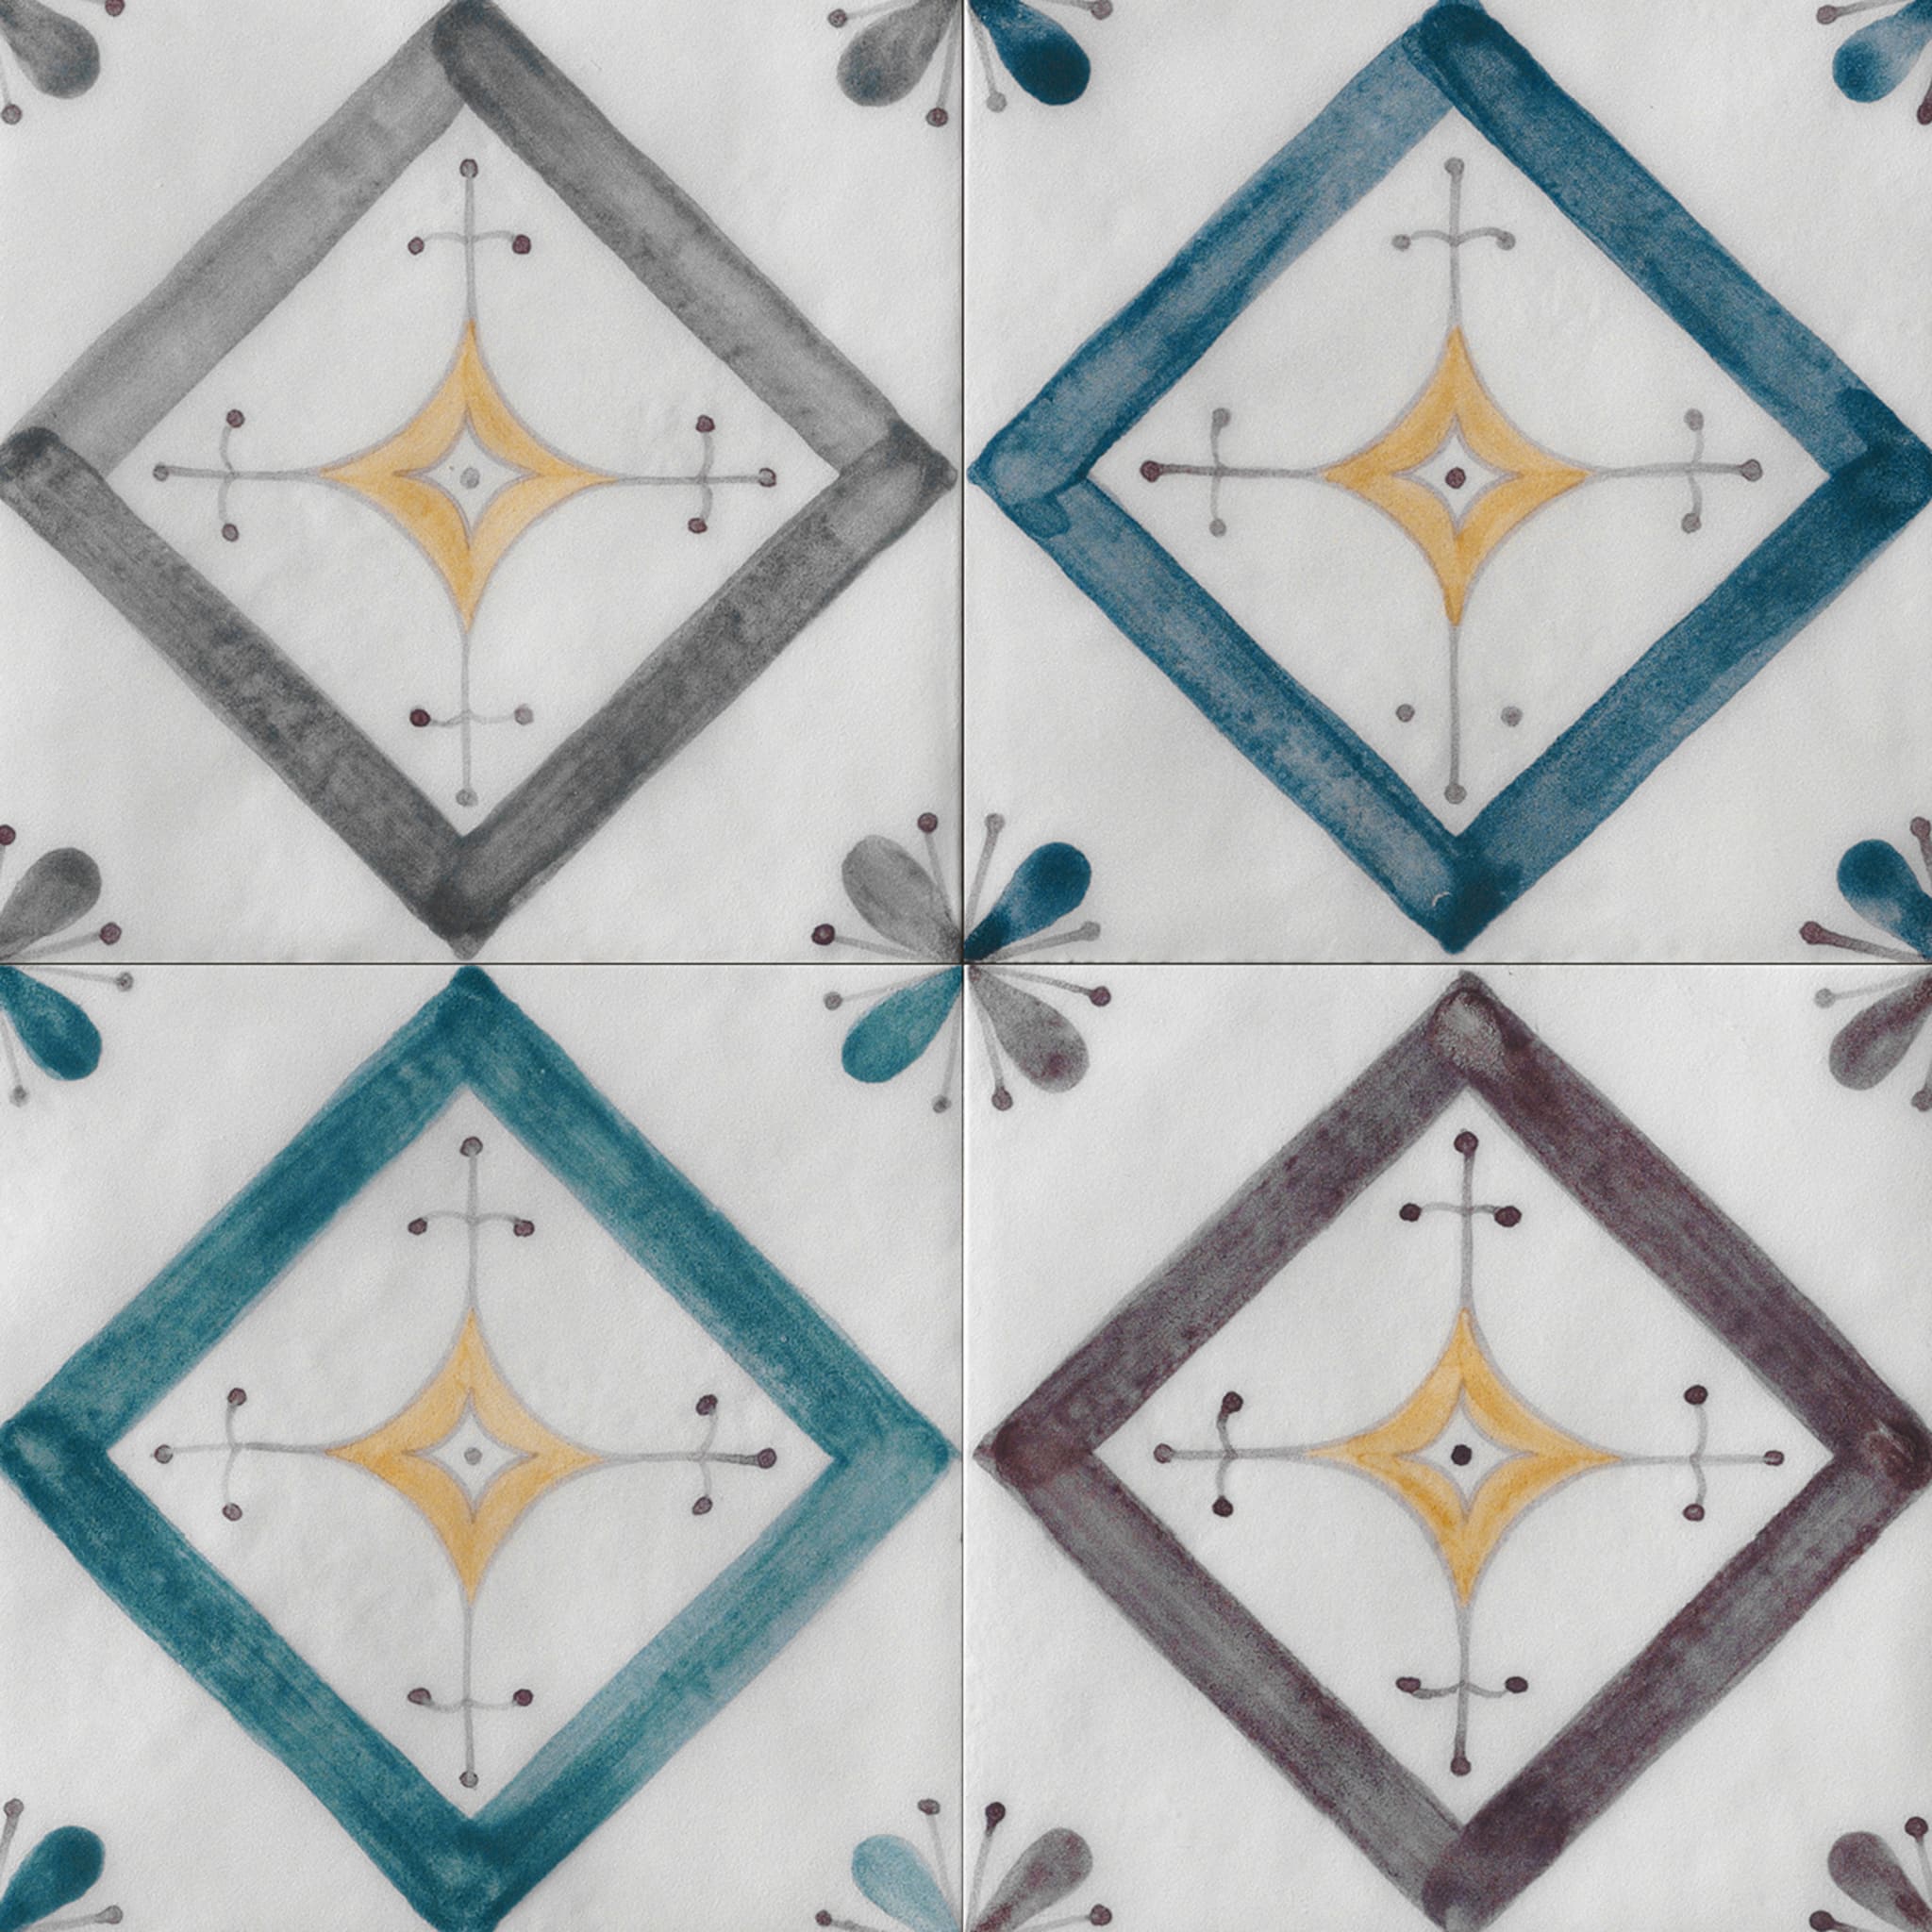 Ot Isuledda Menta Blue Set of 24 Square Tiles - Alternative view 5